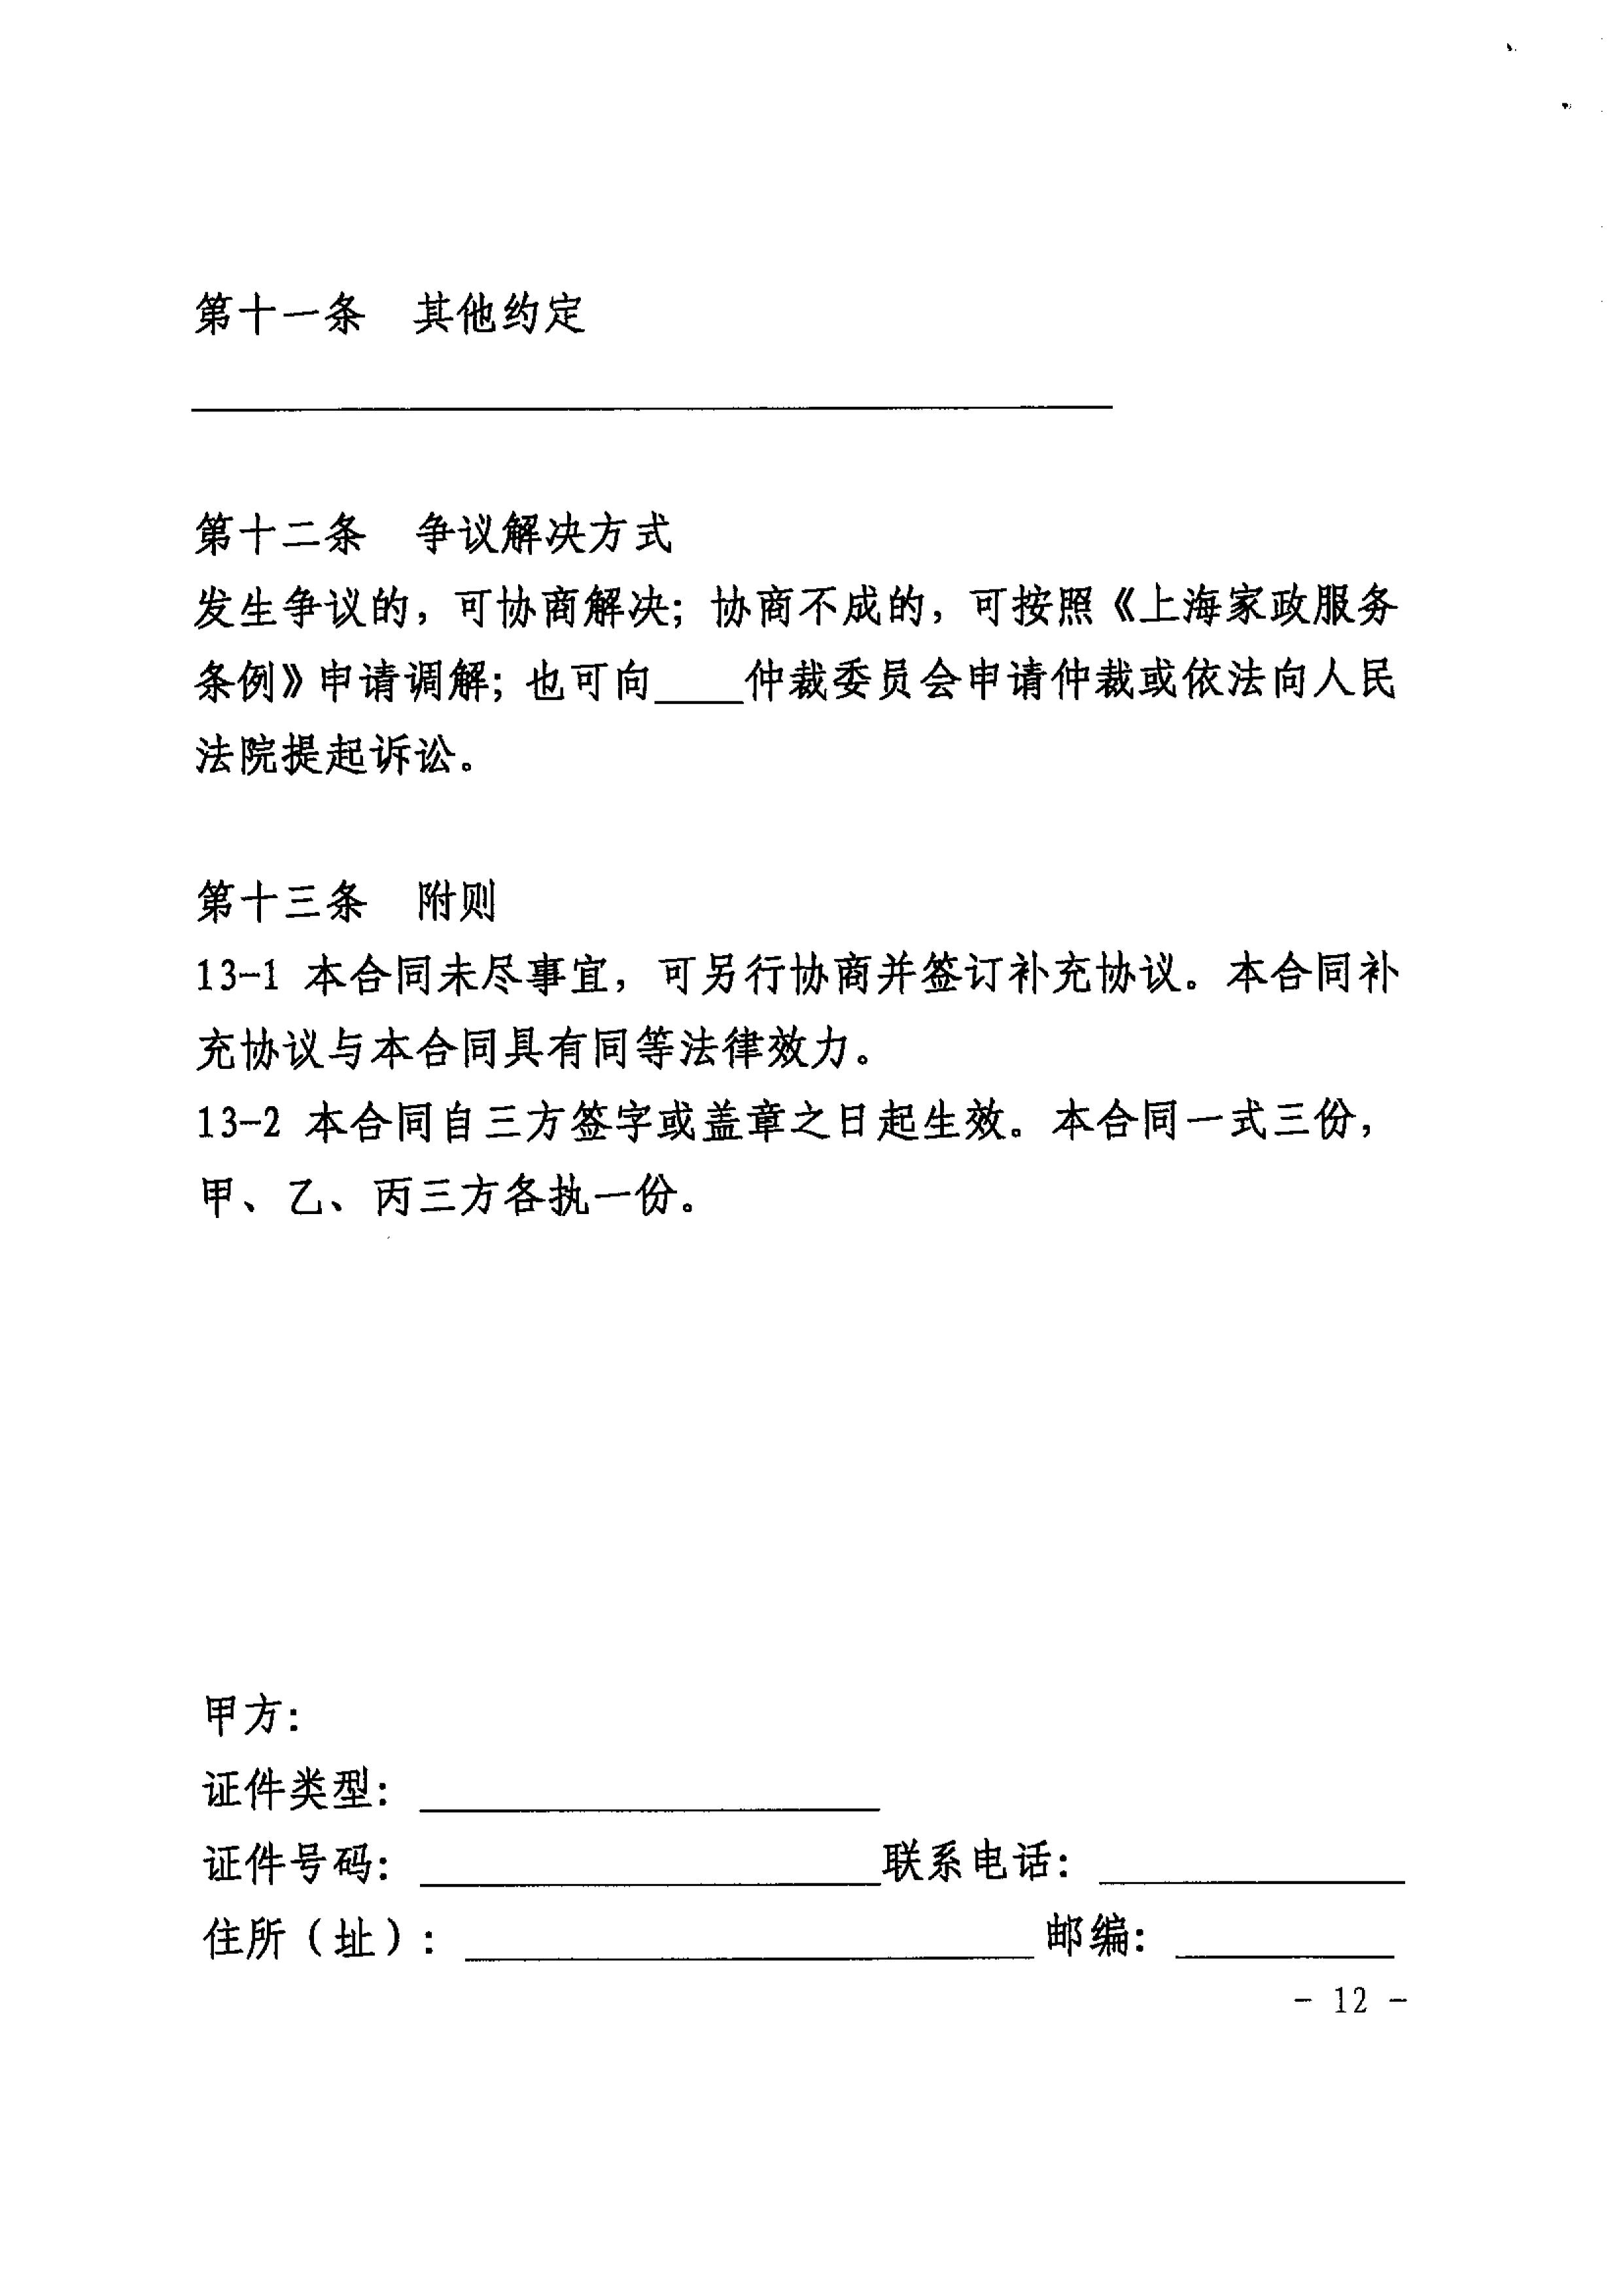 关于推广使用《上海市家政服务合同示范文本》的通知_12